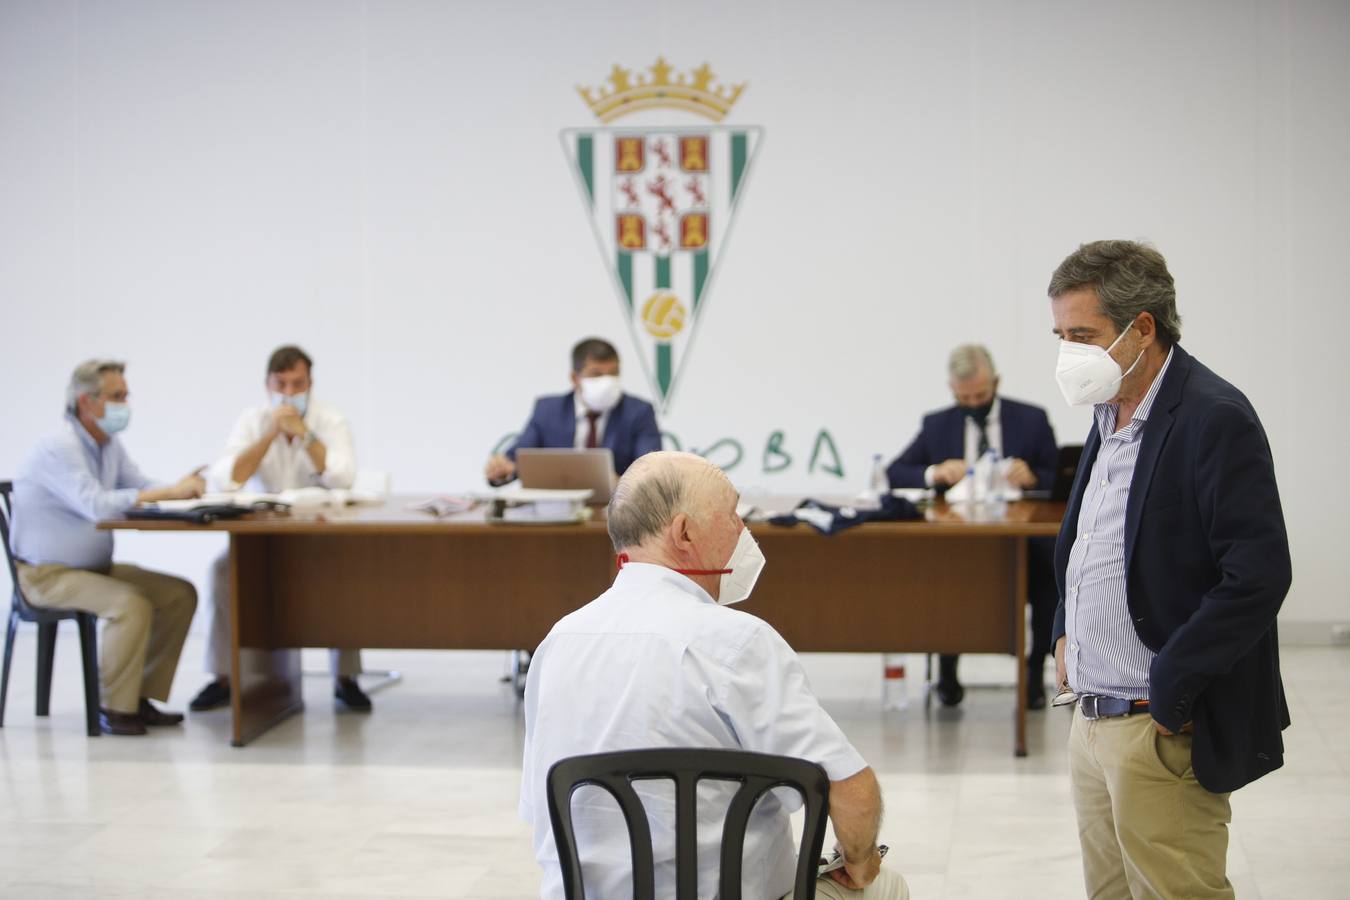 La Junta General de accionistas del Córdoba CF SAD, en imágenes